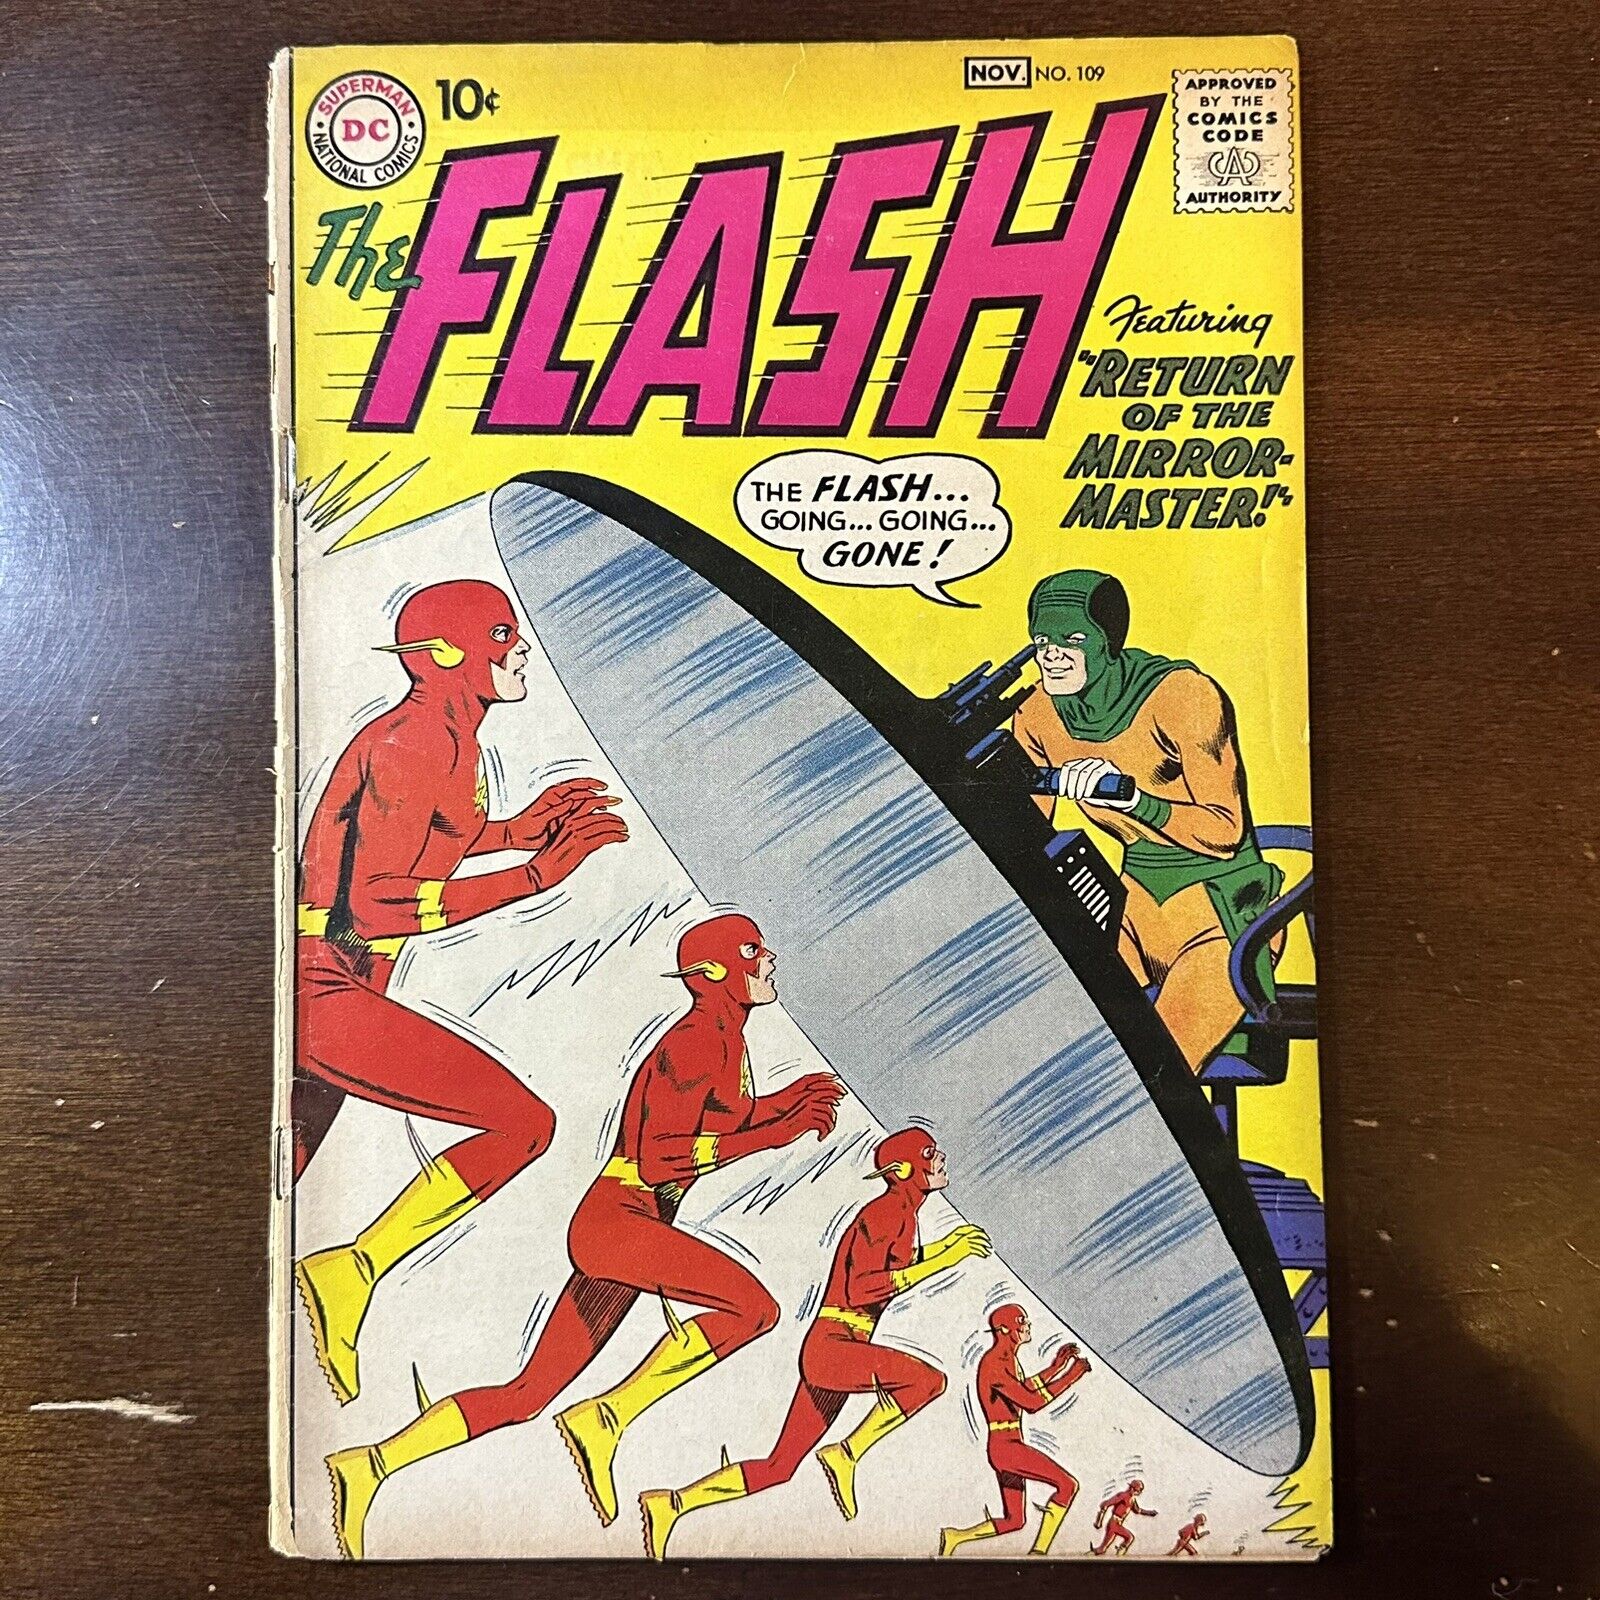 Flash #109 (1959) - 2nd Mirror Master